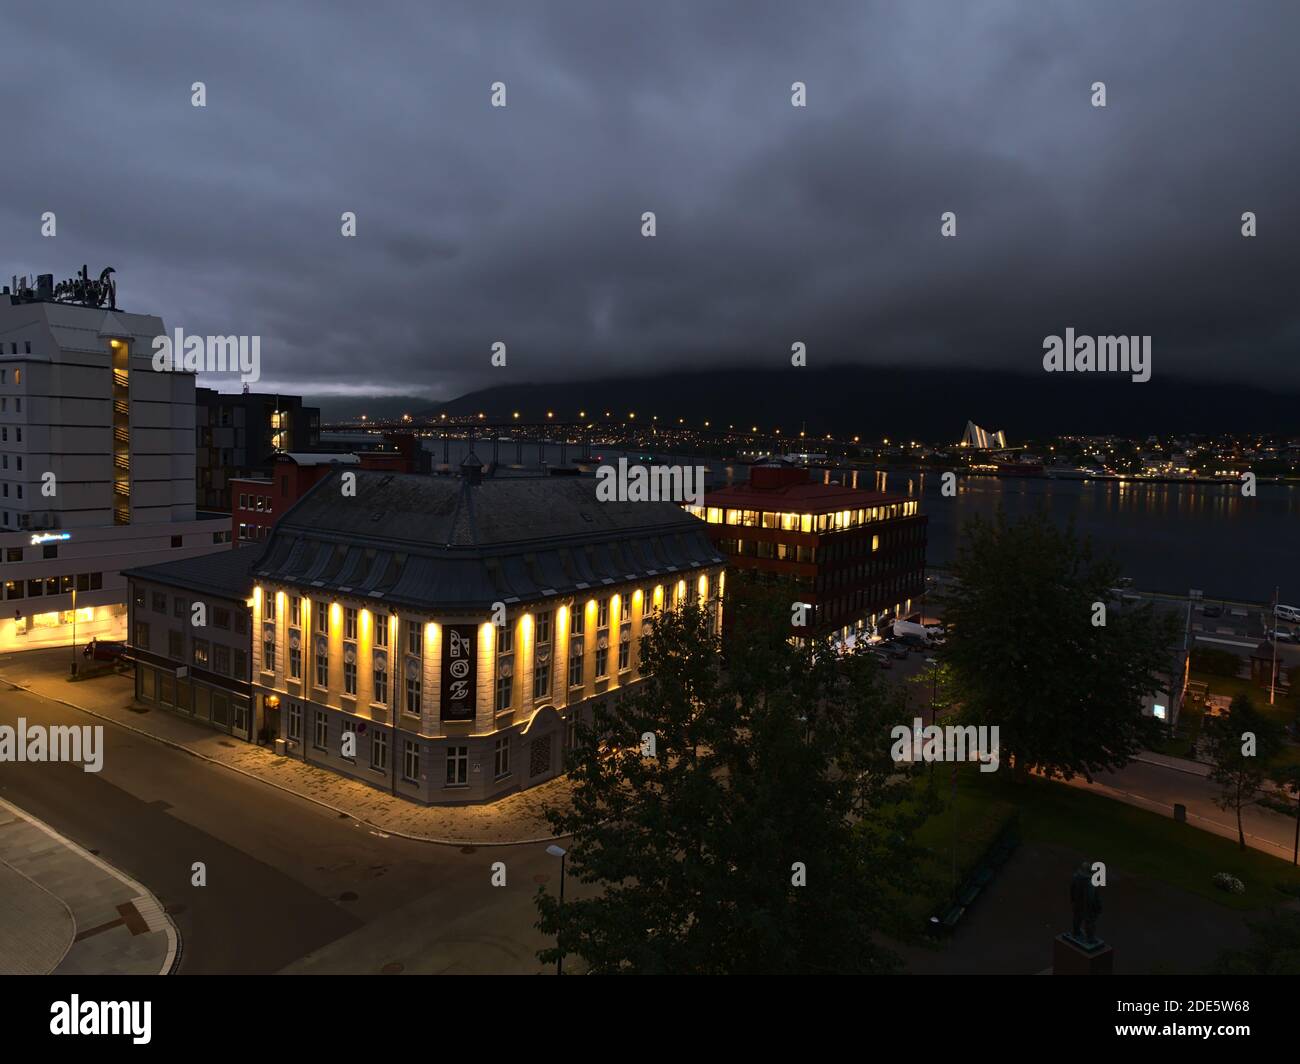 Tromsø, Norvegia - 08-23-2020: Vista aerea notturna del centro di Tromsø con edifici illuminati, il ponte di Tromsøbrua e la cattedrale artica. Foto Stock